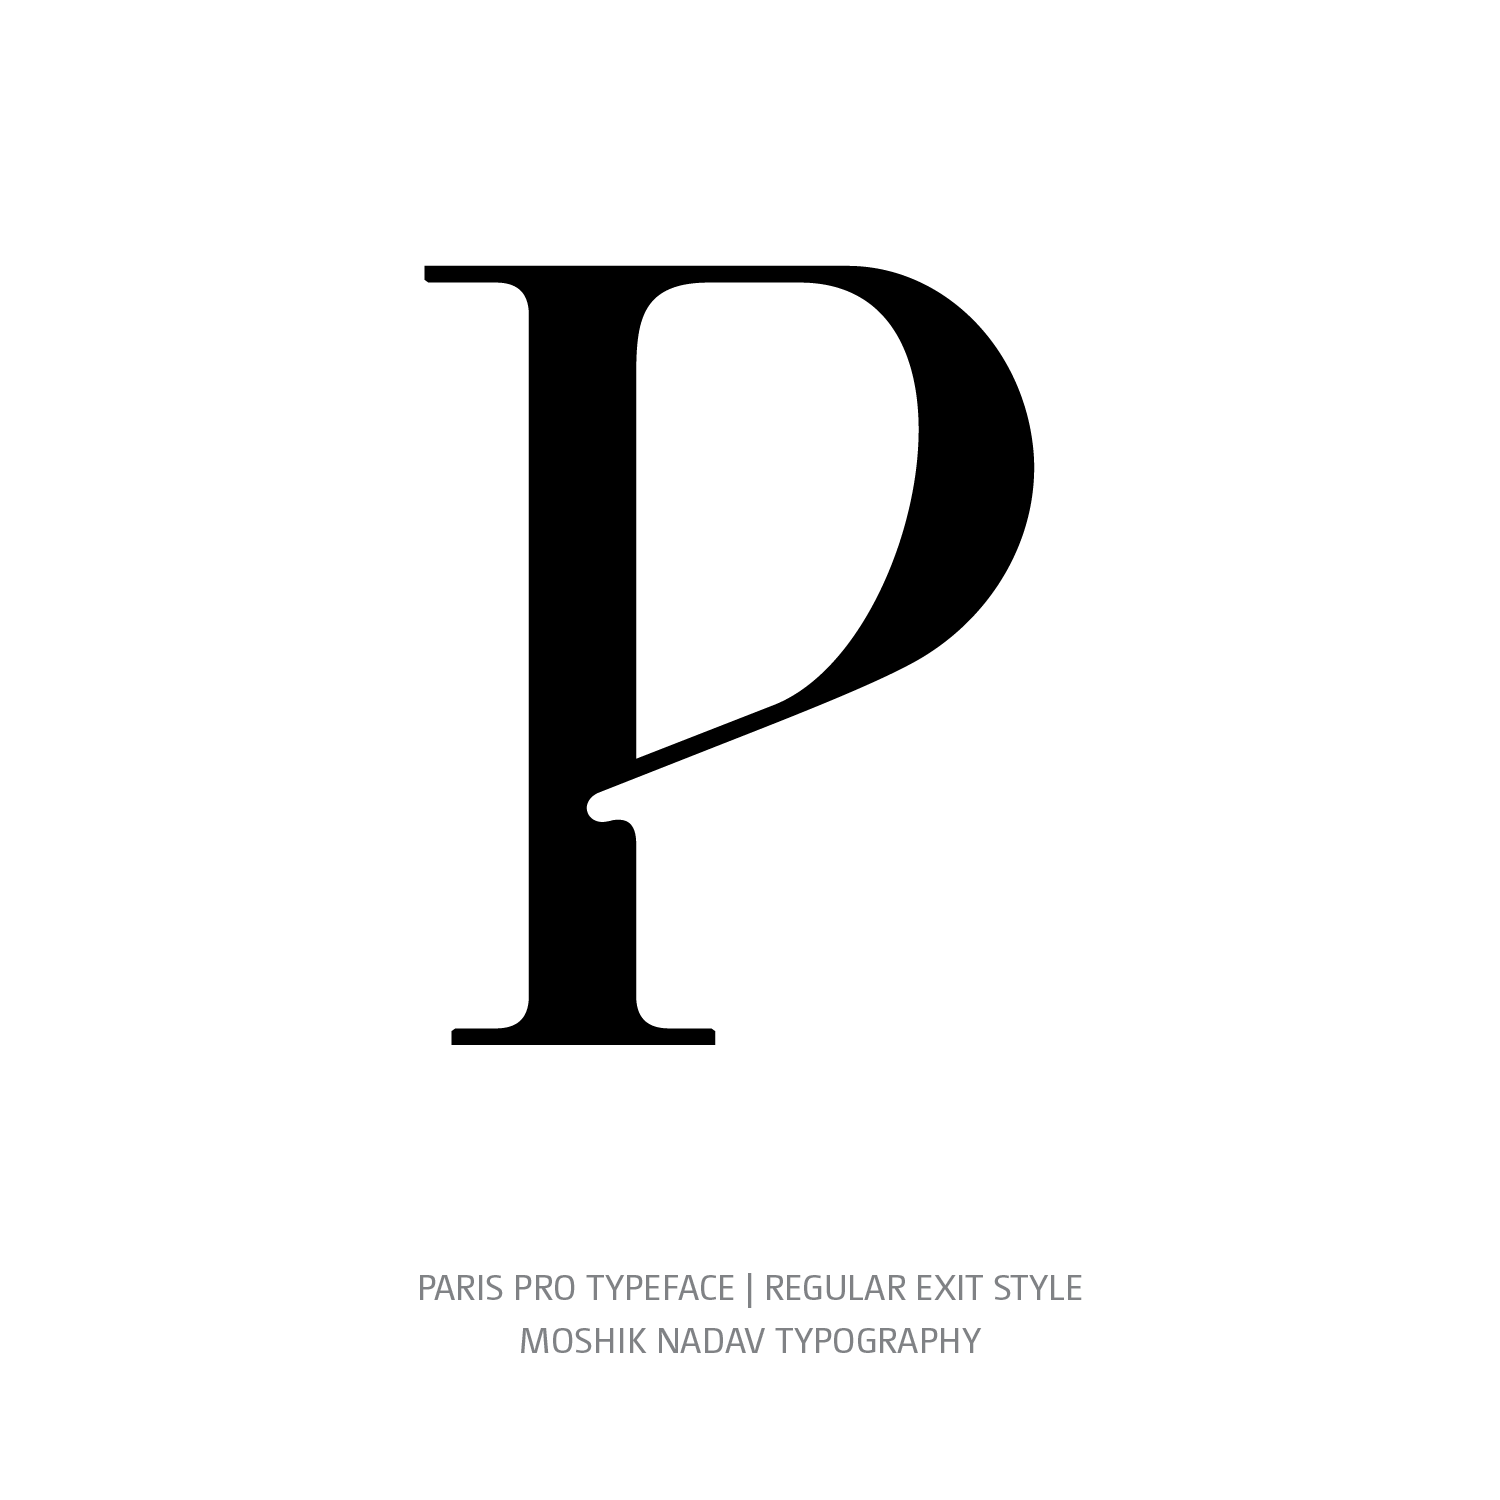 Paris Pro Typeface Regular Exit P